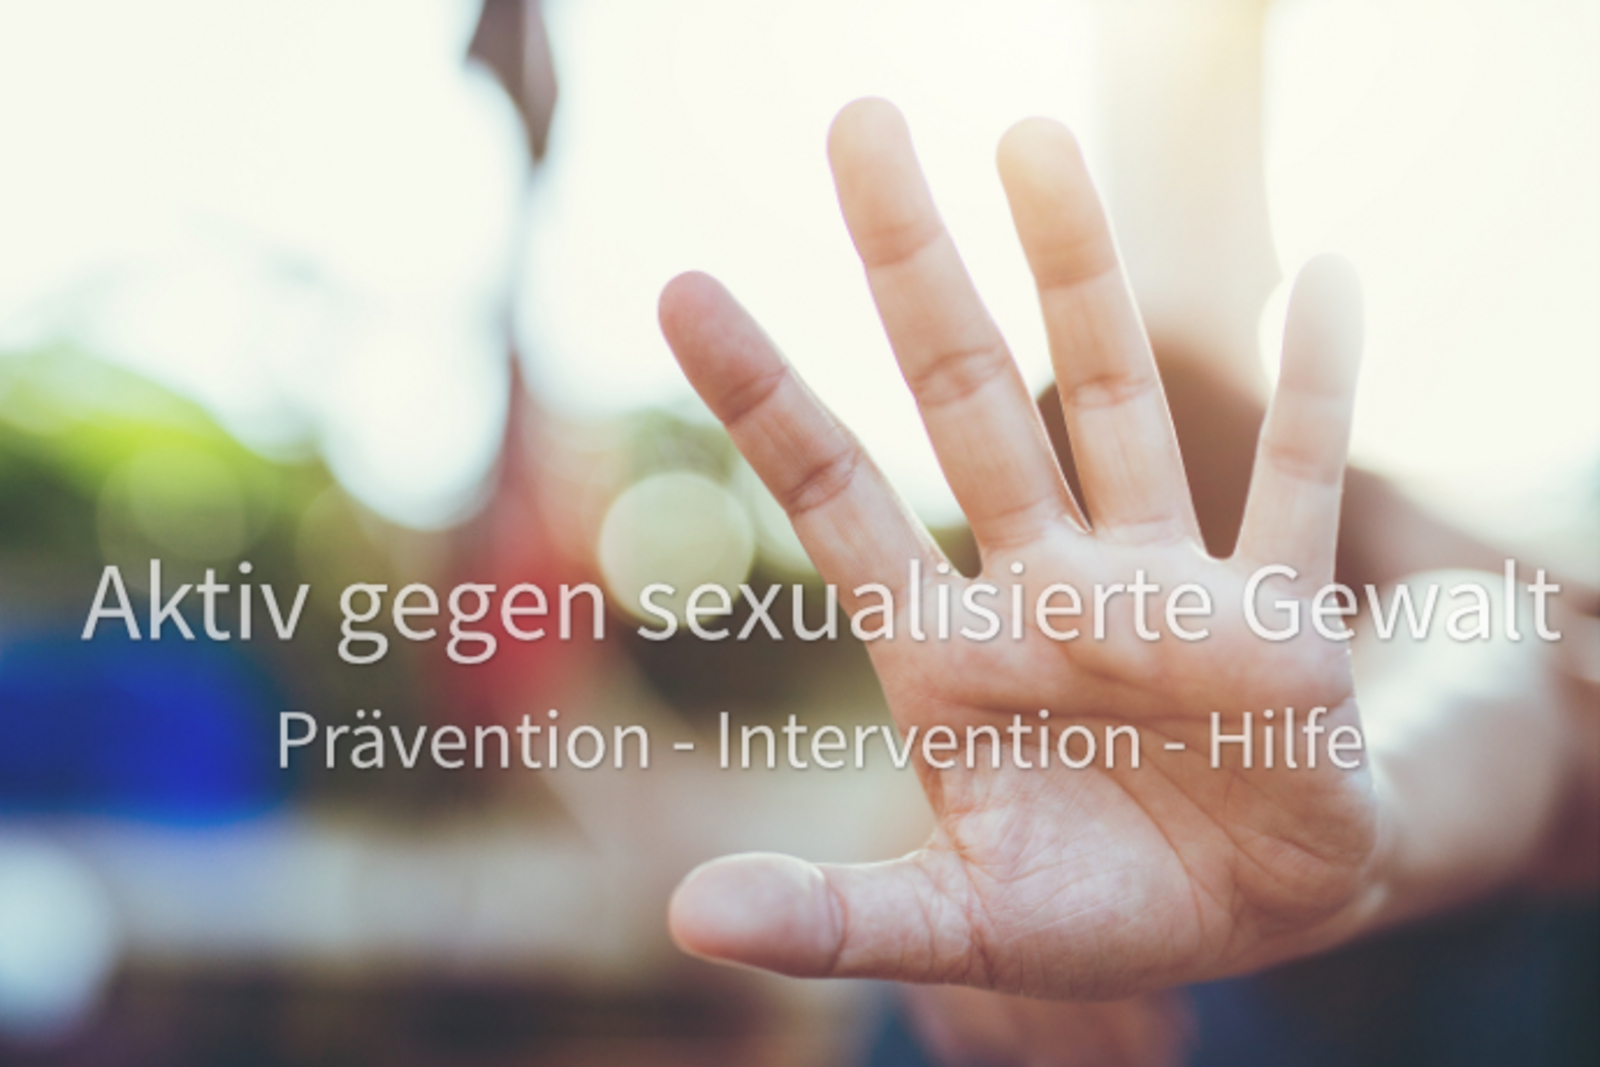 Symbolbild zum Thema Prävention sexualisierte Gewalt